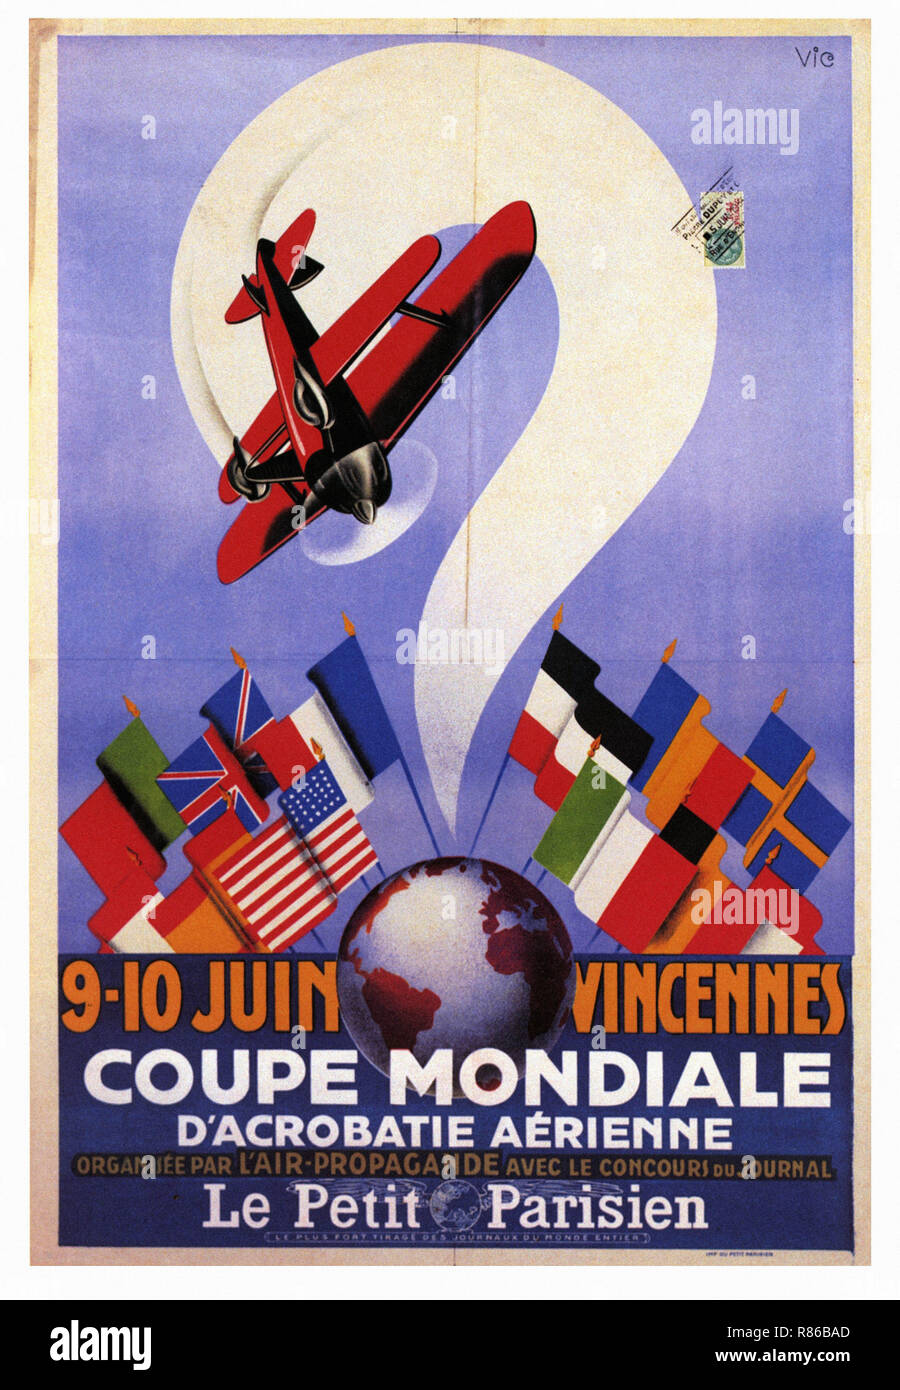 Coupe Mondiale D'Acrobatie Aerienne Vincennes 1934 - Vintage advertising poster Stock Photo